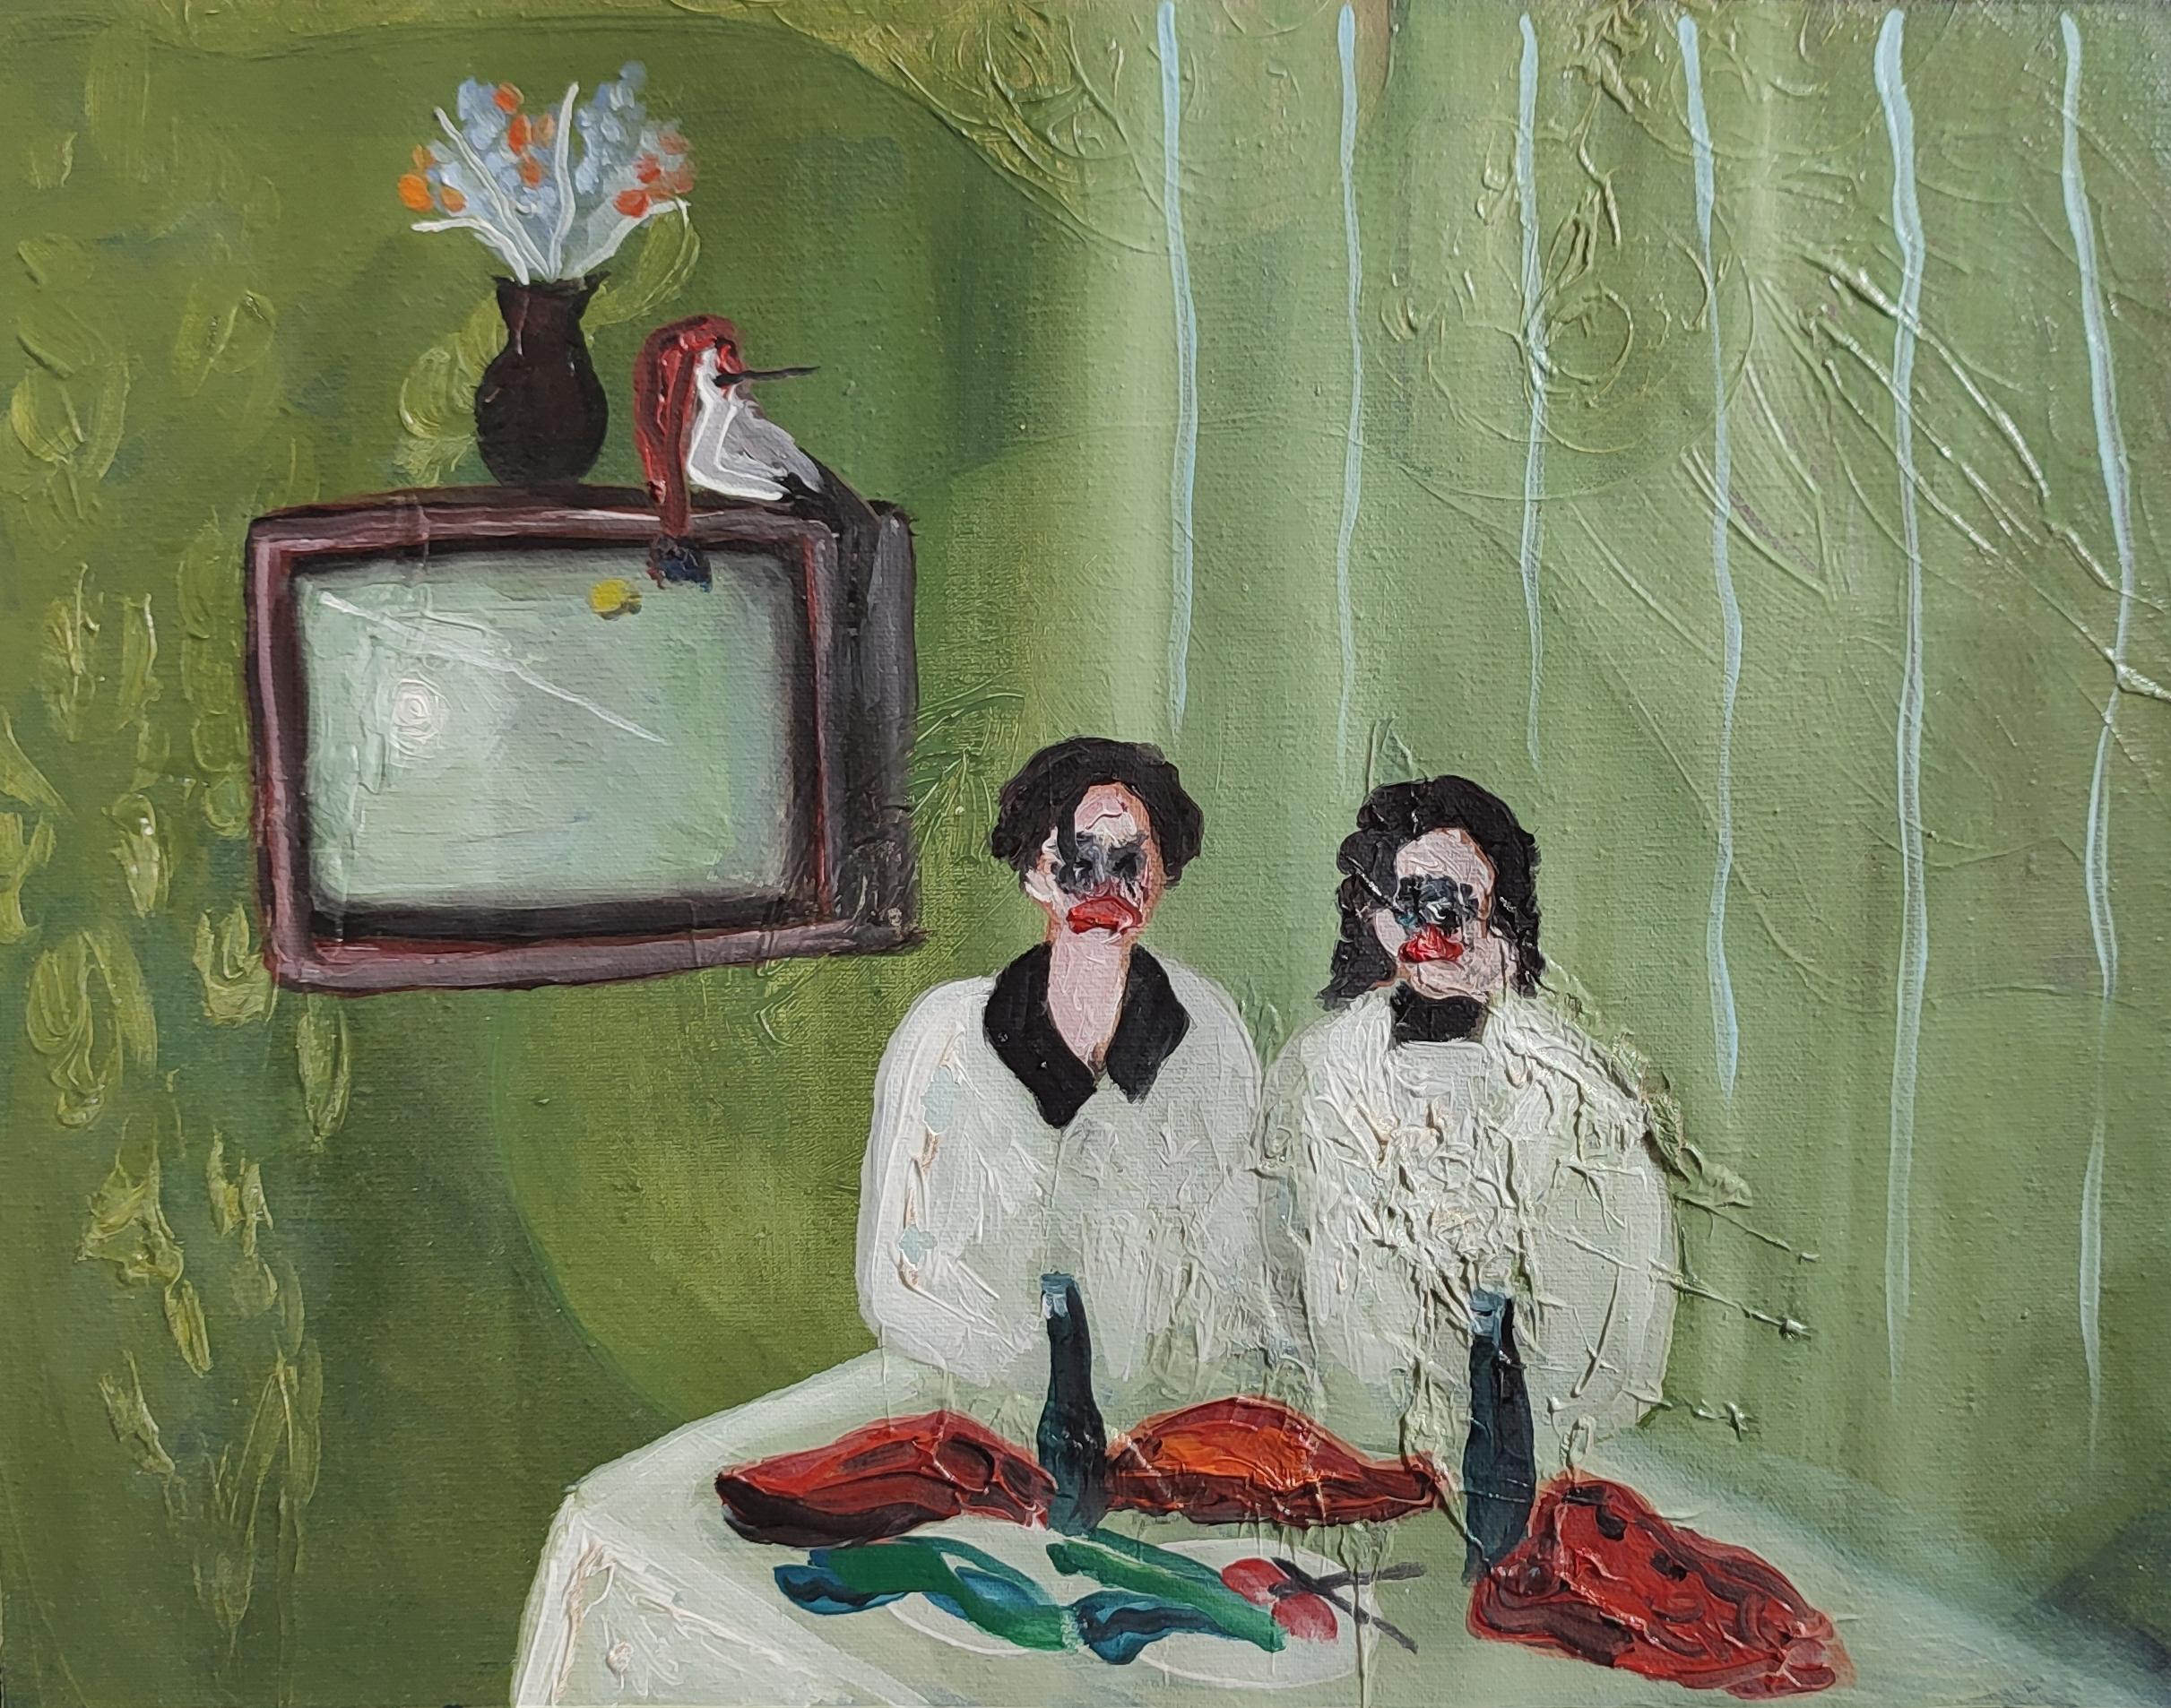 Huile sur toile

Elene Melikidze est une artiste géorgienne née en 1999 qui vit et travaille à Tbilissi, en Géorgie. Elle a commencé à peindre dès l'enfance sur différents supports. Elle est également critique de cinéma. L'artiste travaille